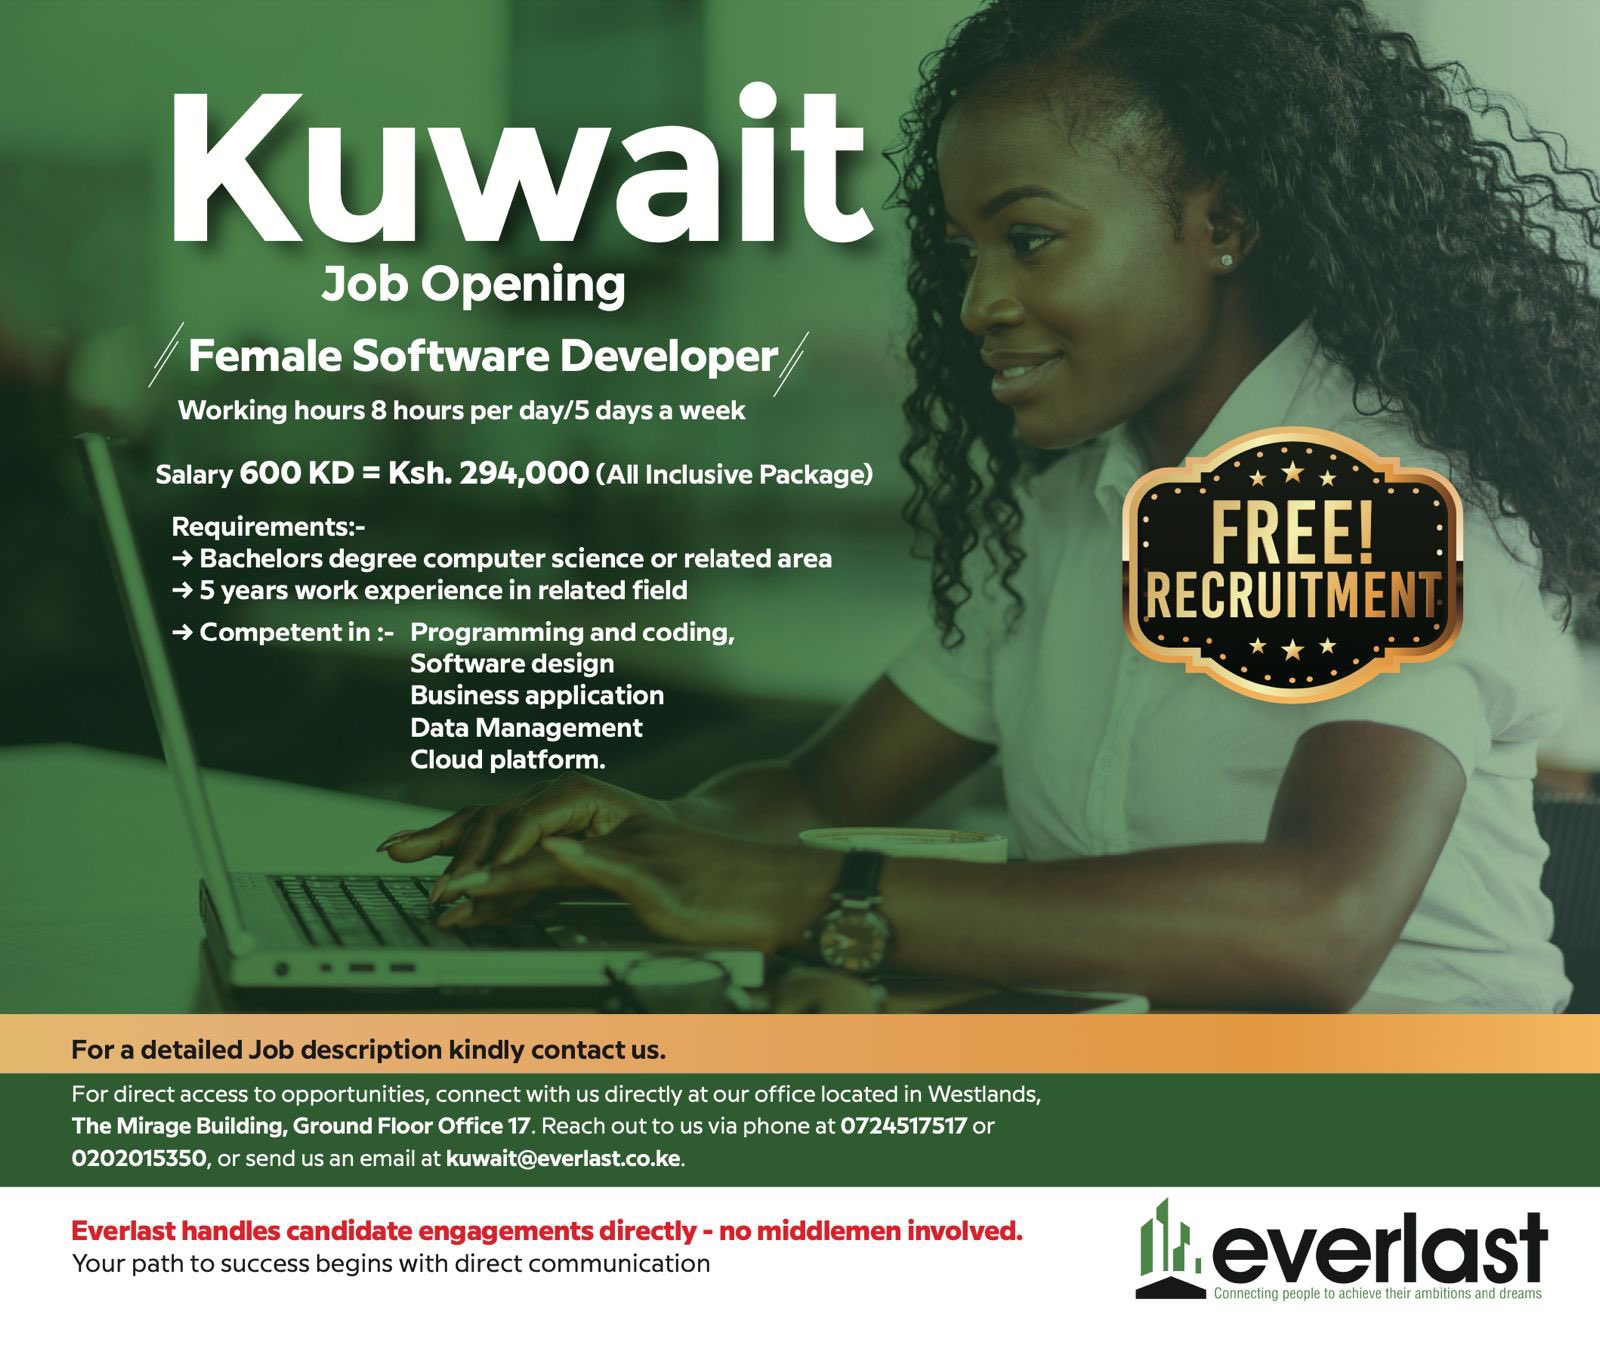 Everlast-Recruitment Services Kenya on X:  / X